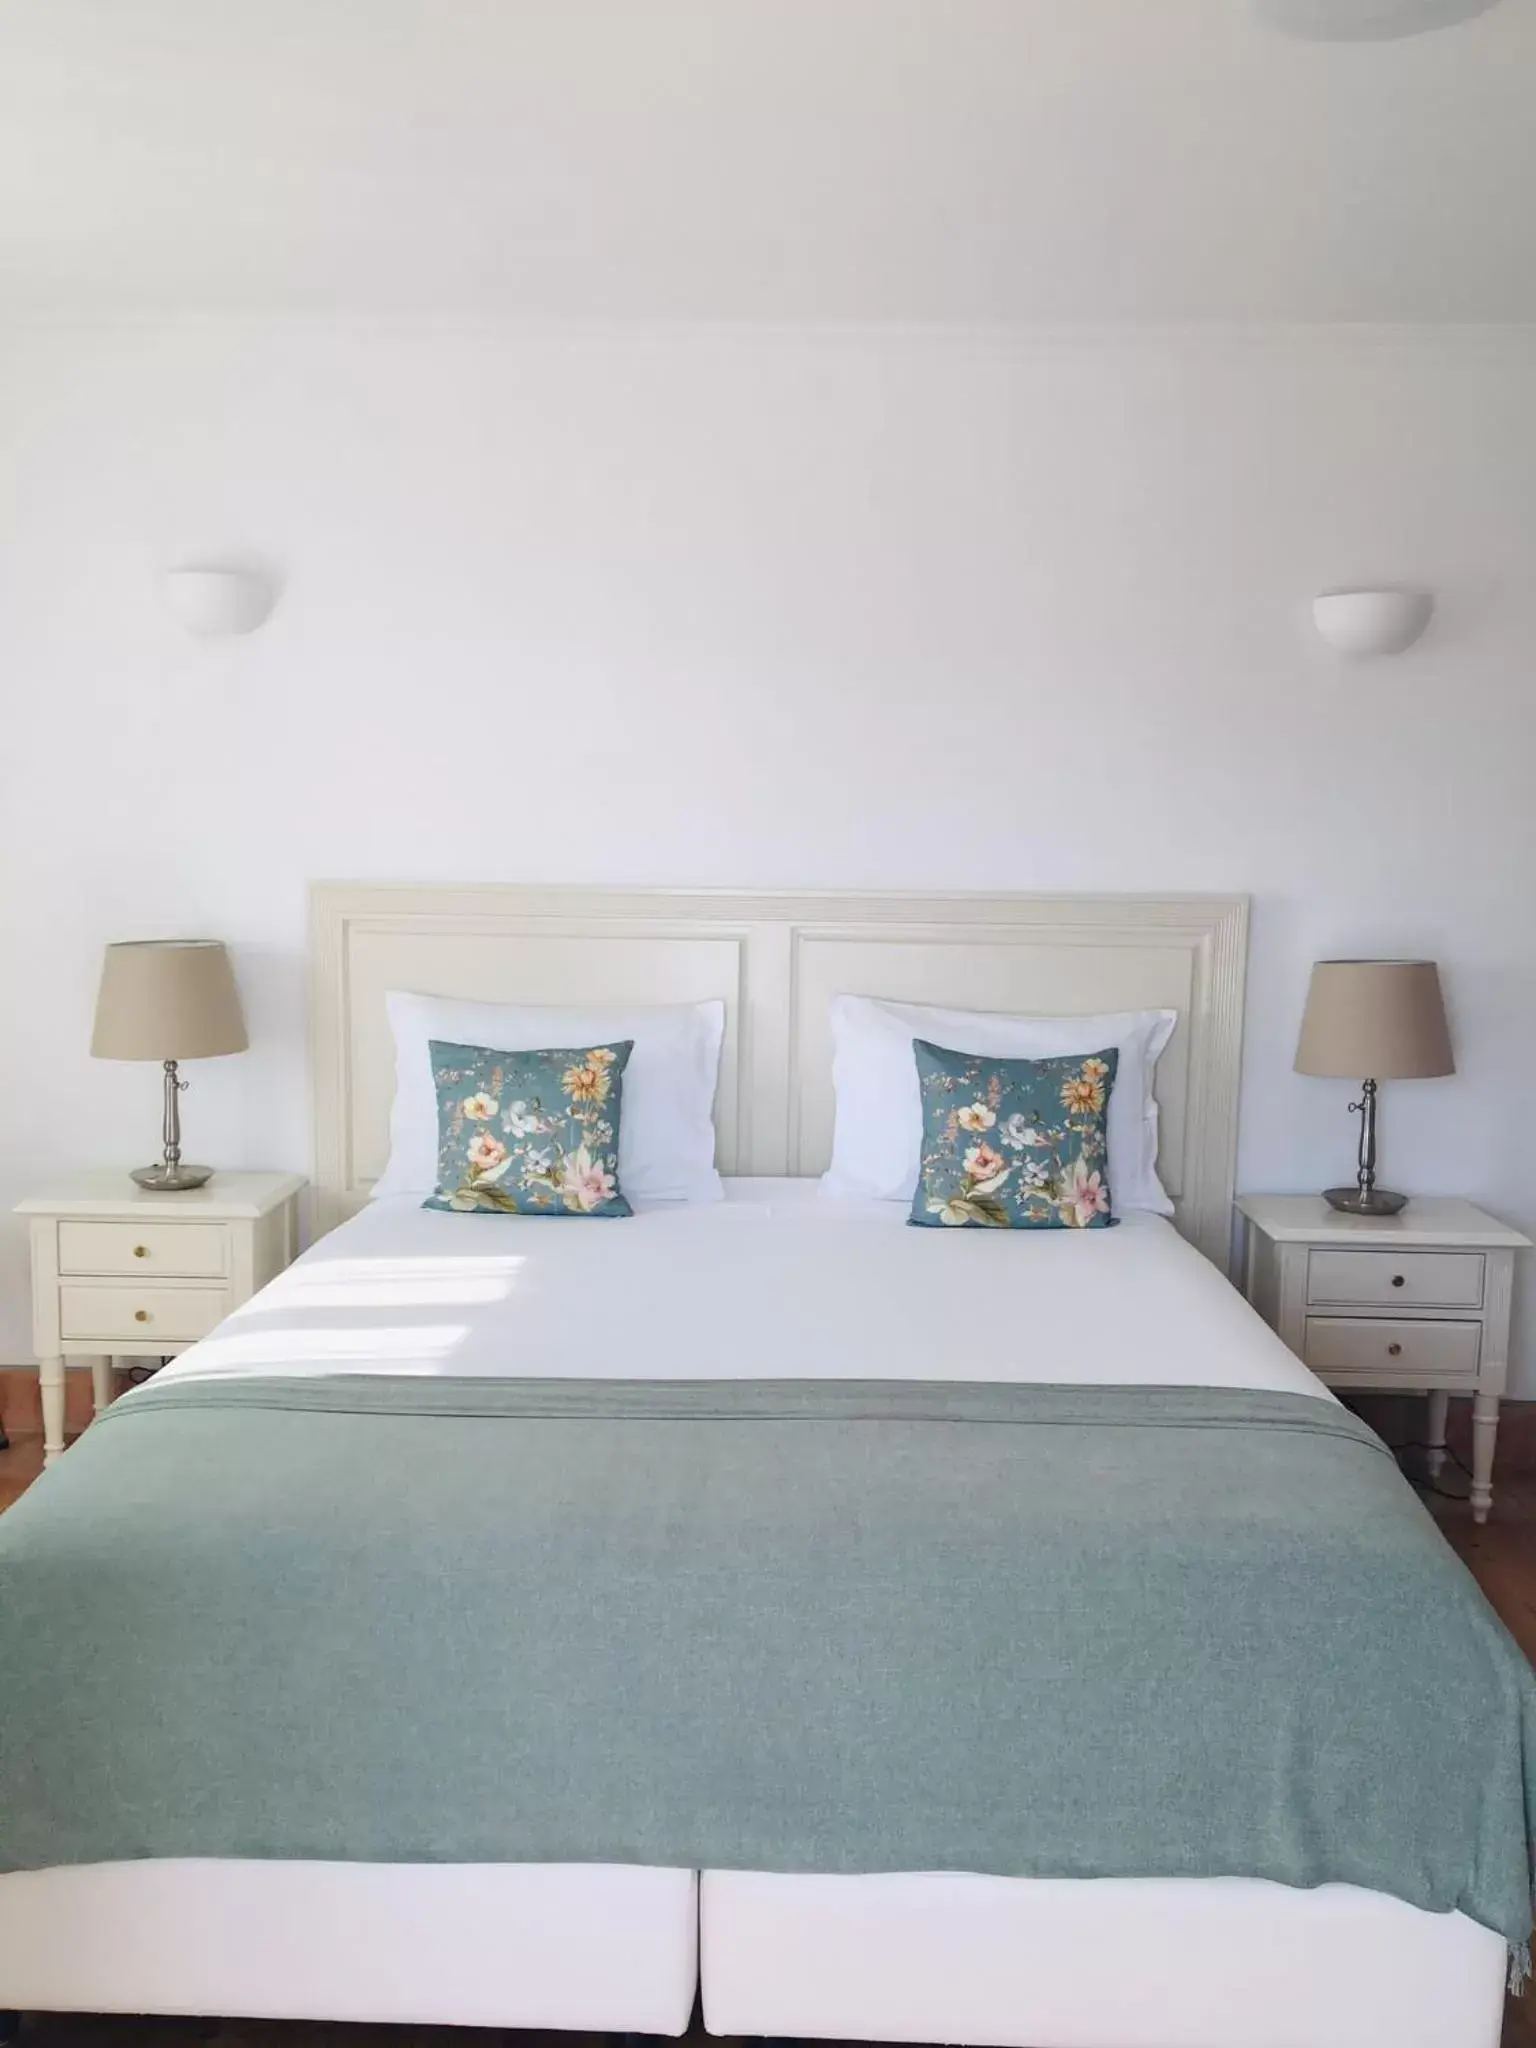 Bedroom, Bed in Guarda Rios